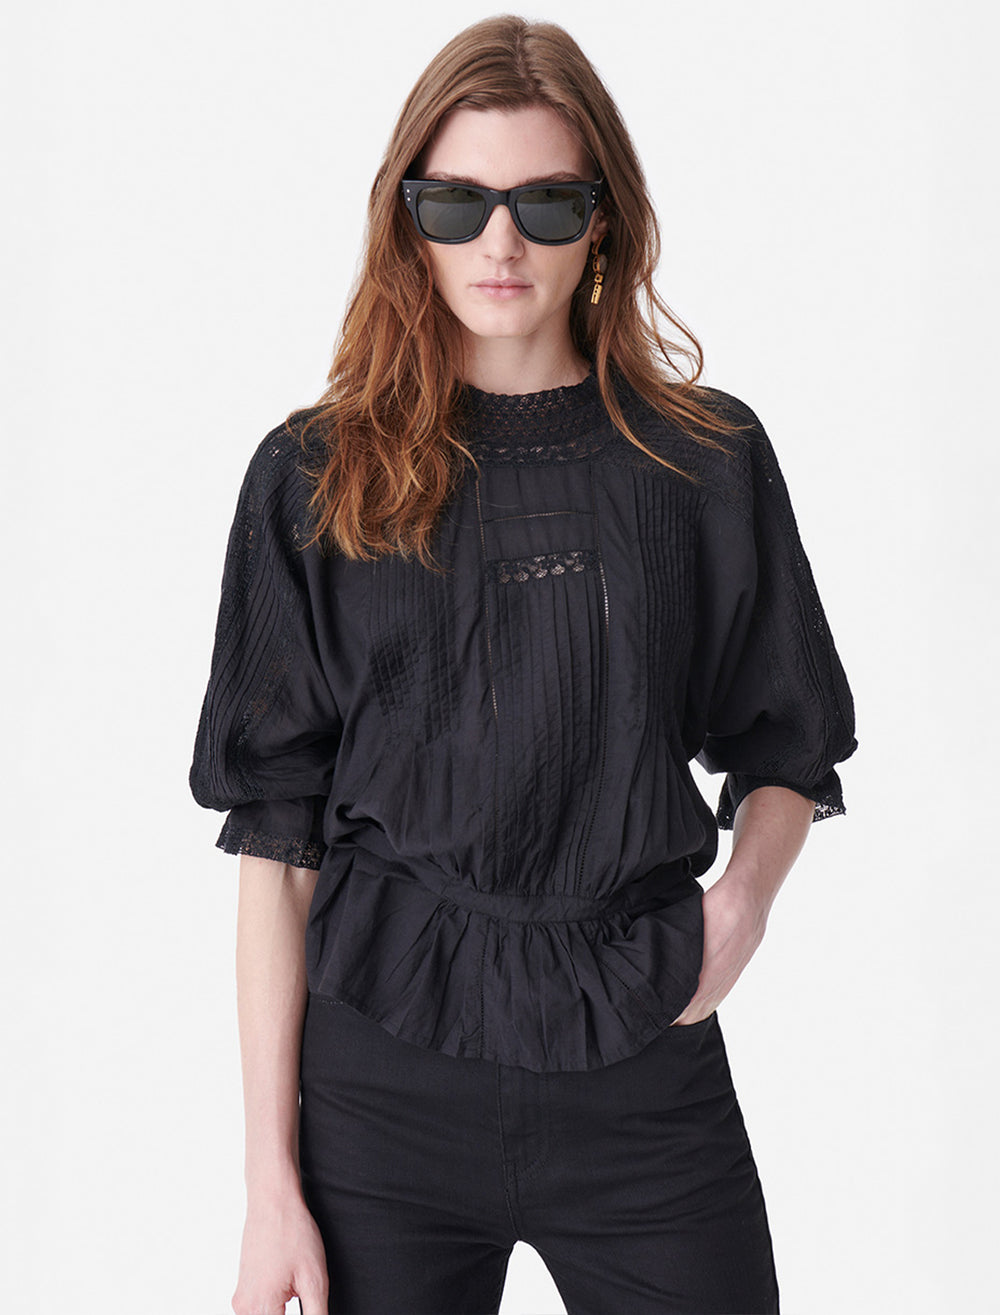 Model wearing Vanessa Bruno's viva blouse in noir.